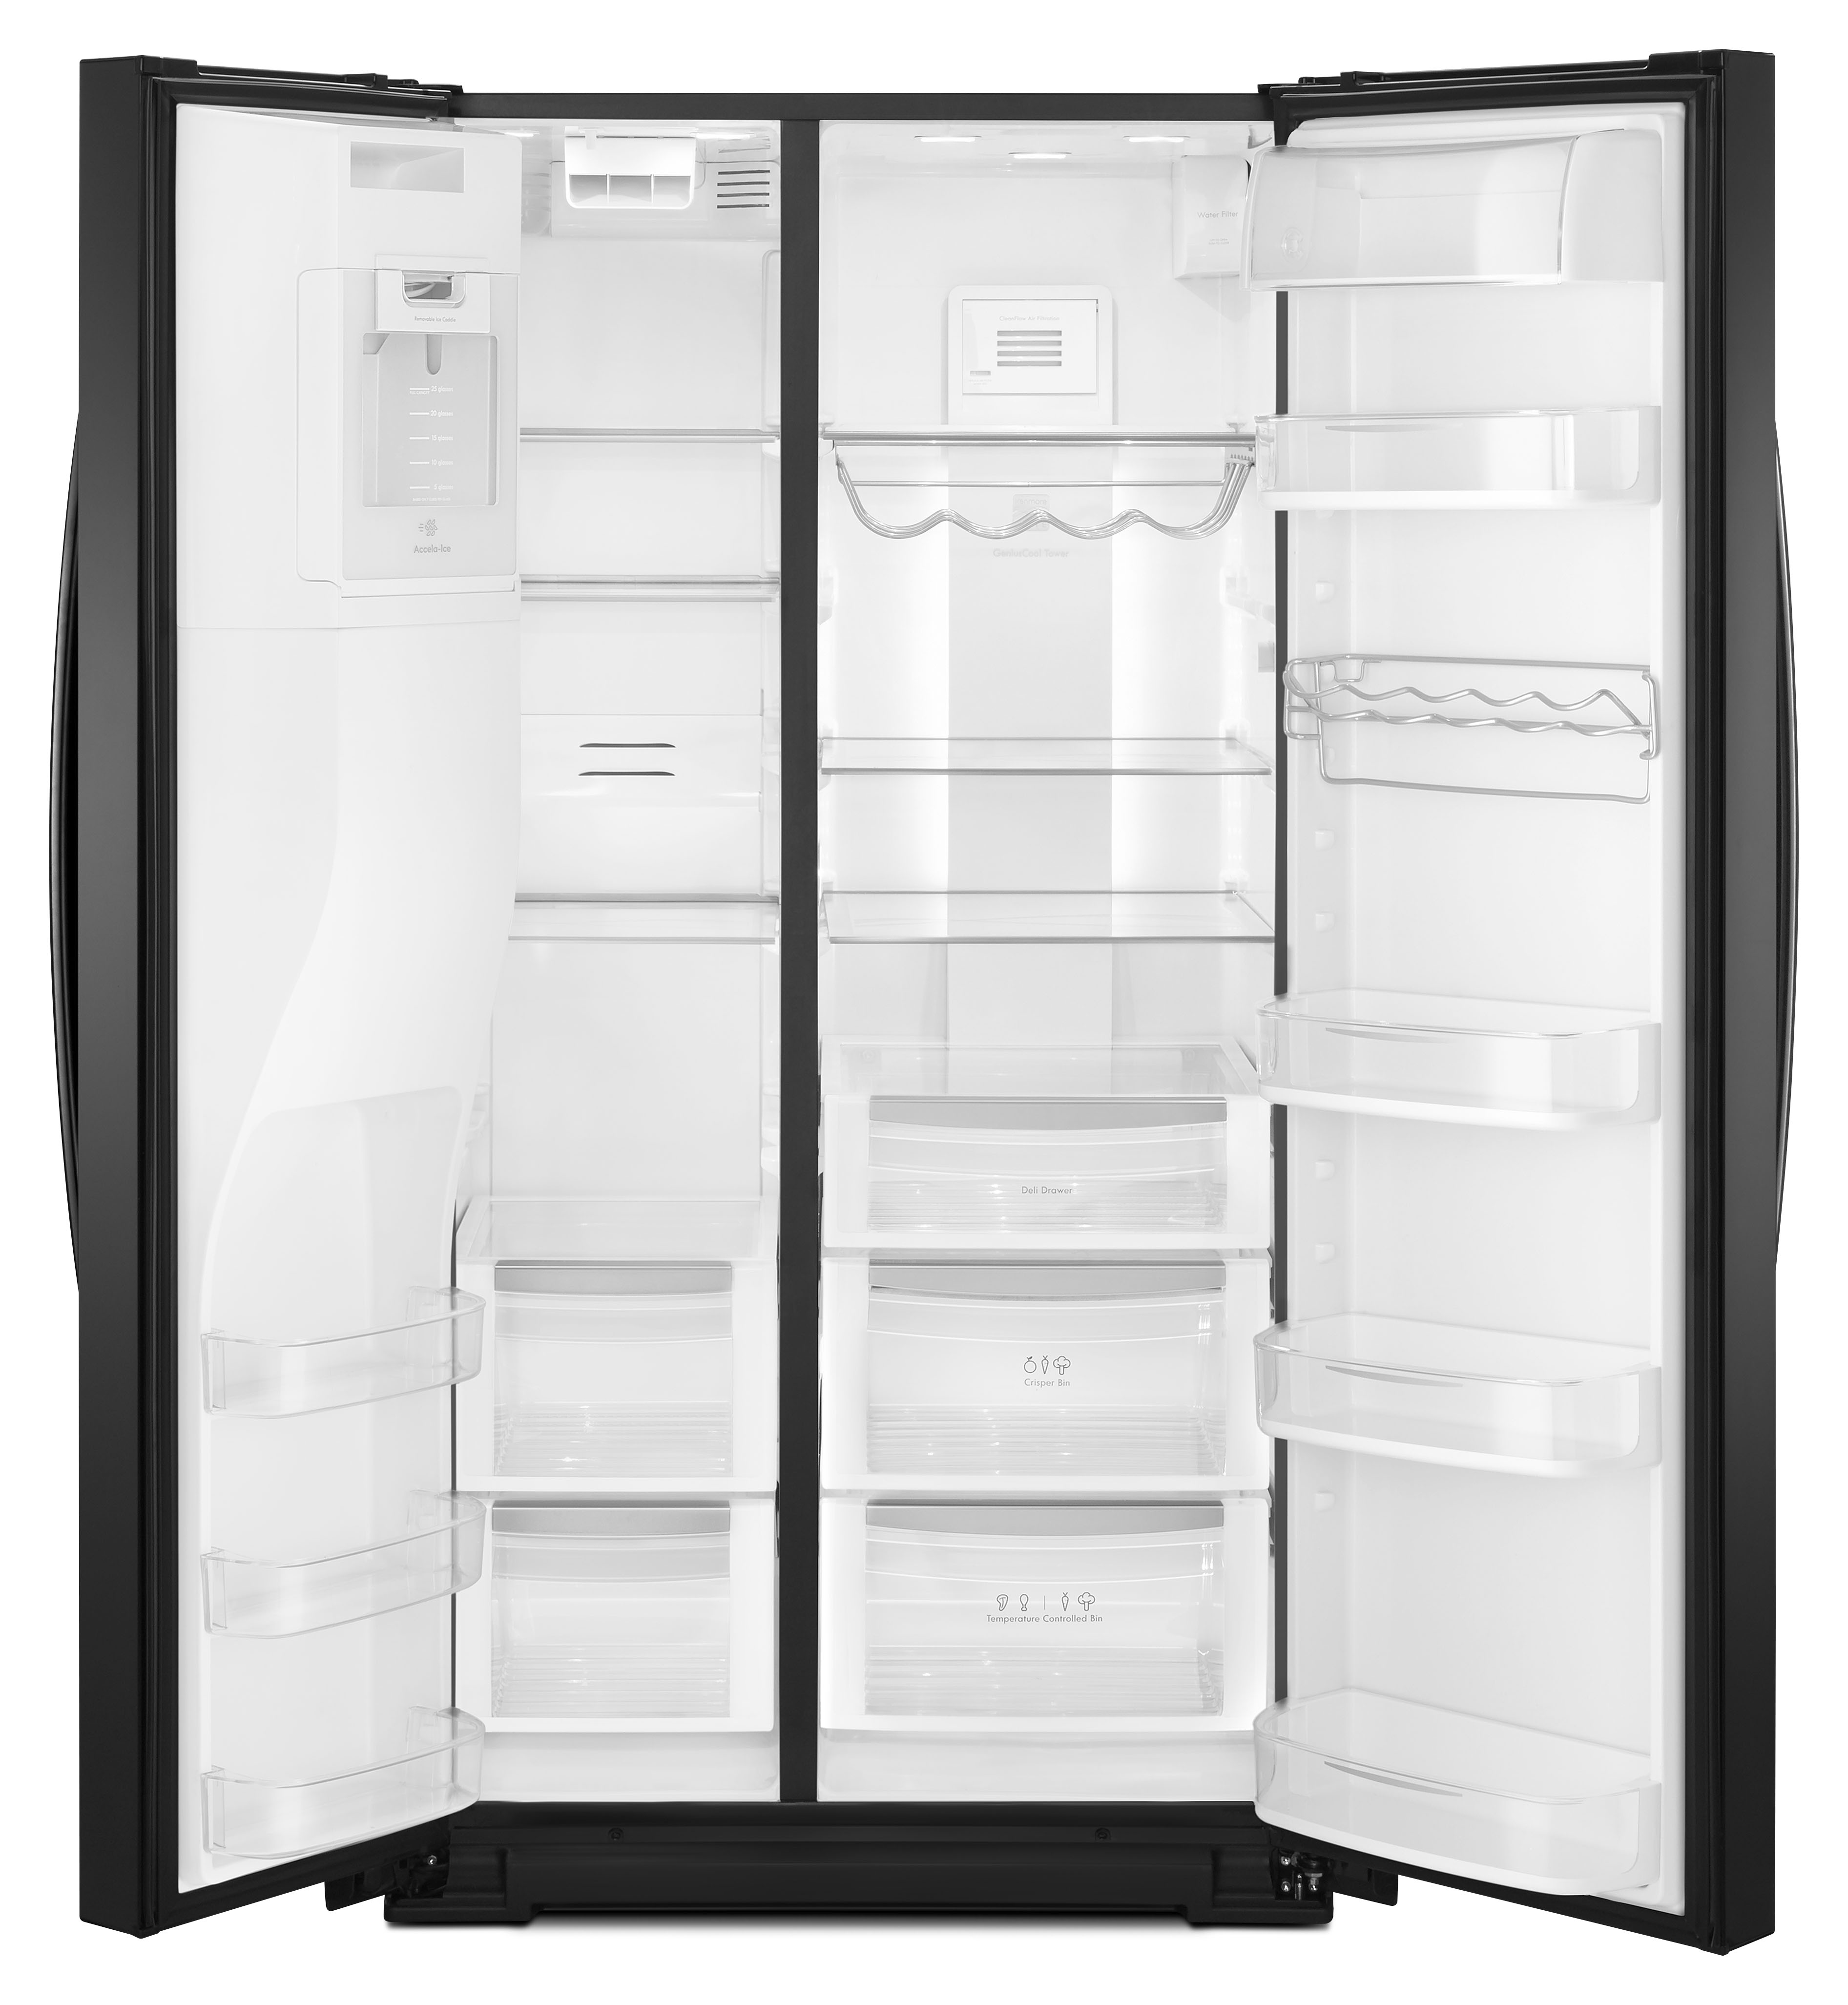 Kenmore Elite 51779 - 28 cu. ft. Side-by-Side Refrigerator - Black 